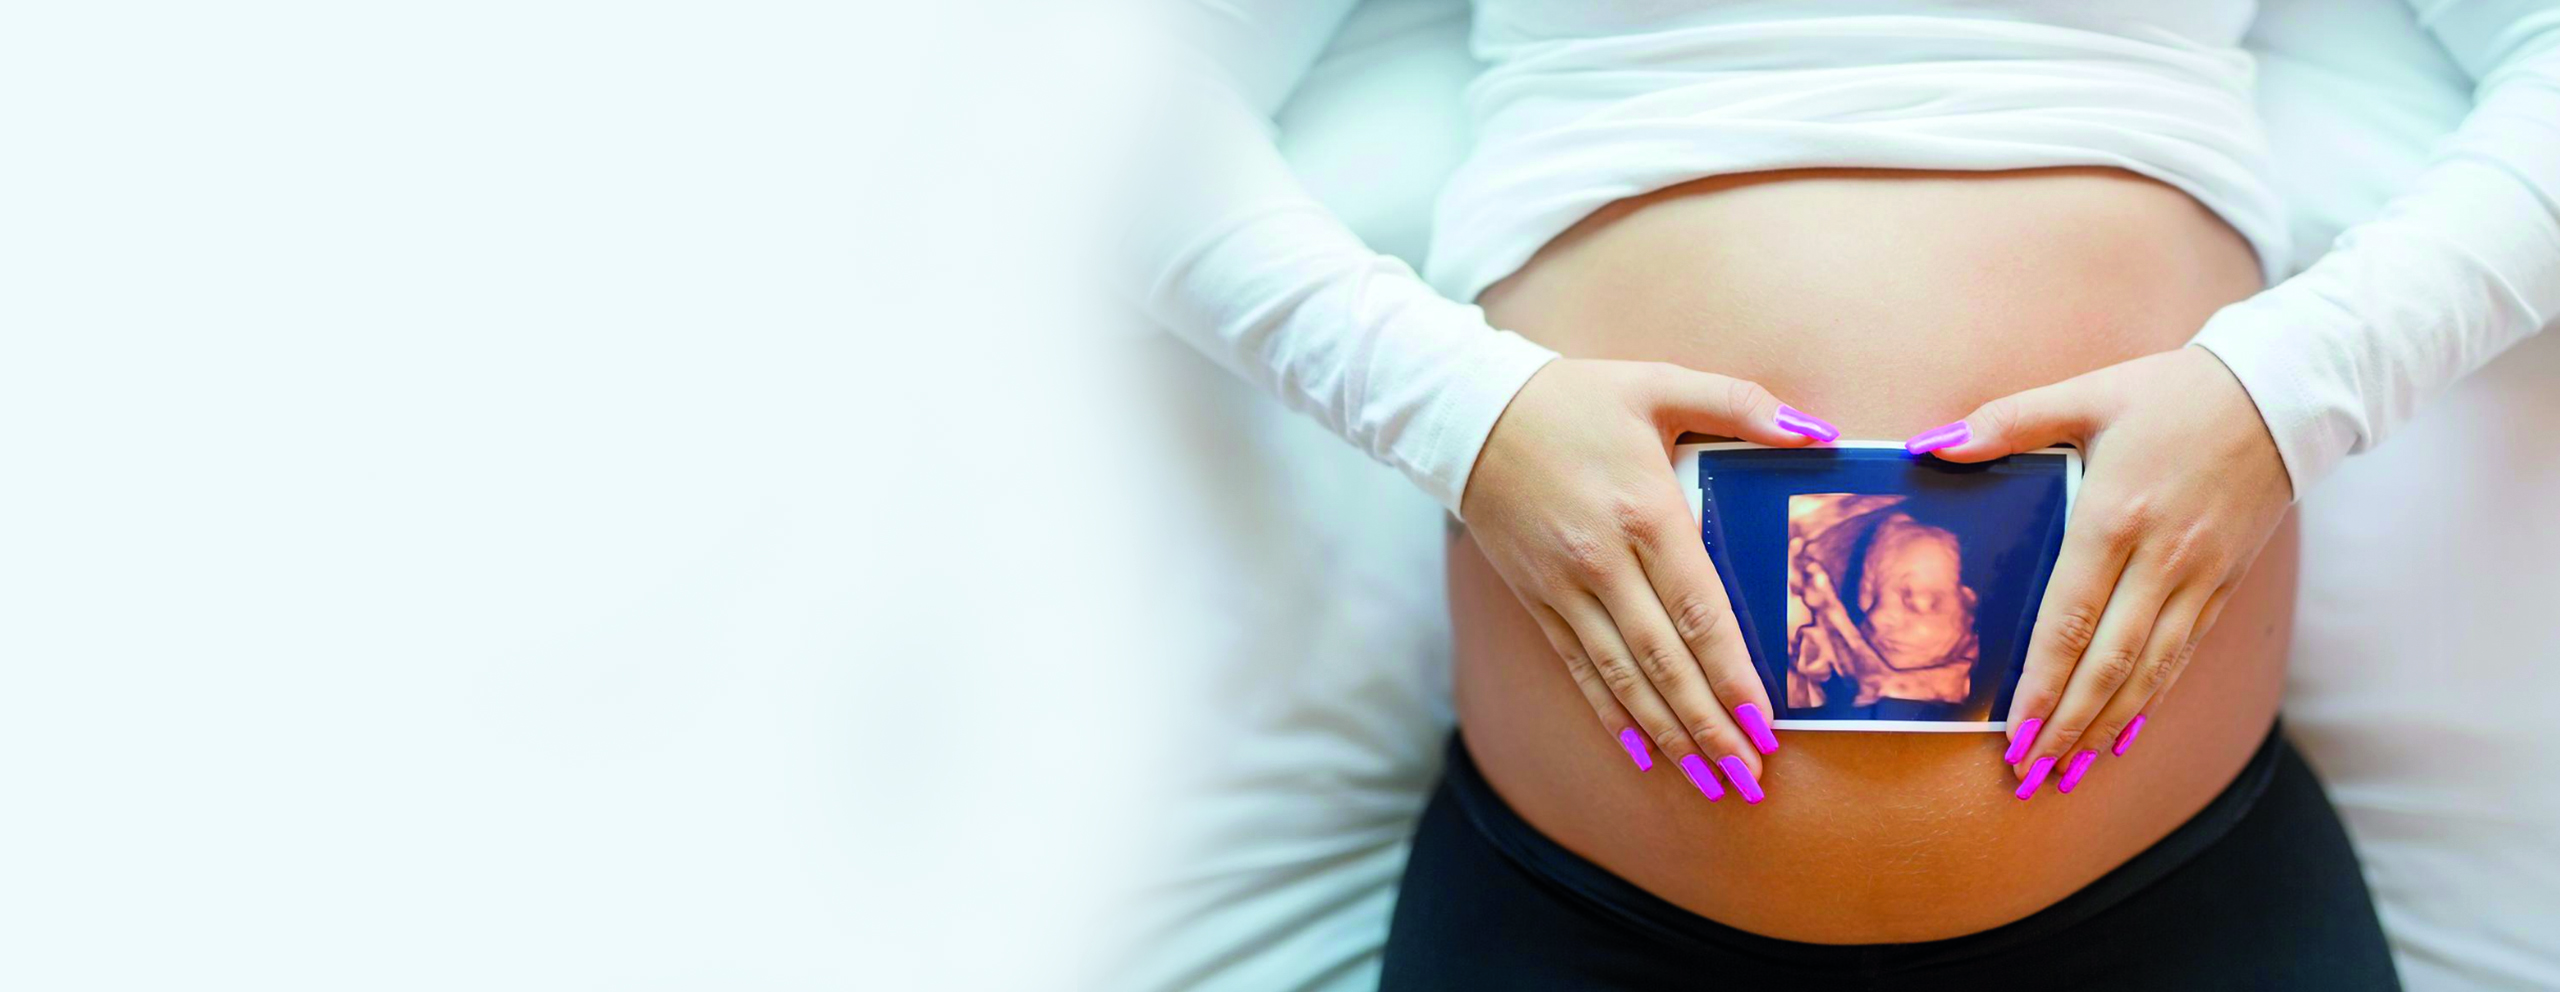 Kadın Hastalıkları ve Doğum Uzmanı Op. Dr. Lütfiye Tomak, kliniğinde 4 boyutlu ultrason teknolojisi ile hamilelik boyunca bebeğinizi takip ve muayene için son teknolojilere sahip ultrason sistemi kullanmaktadır.